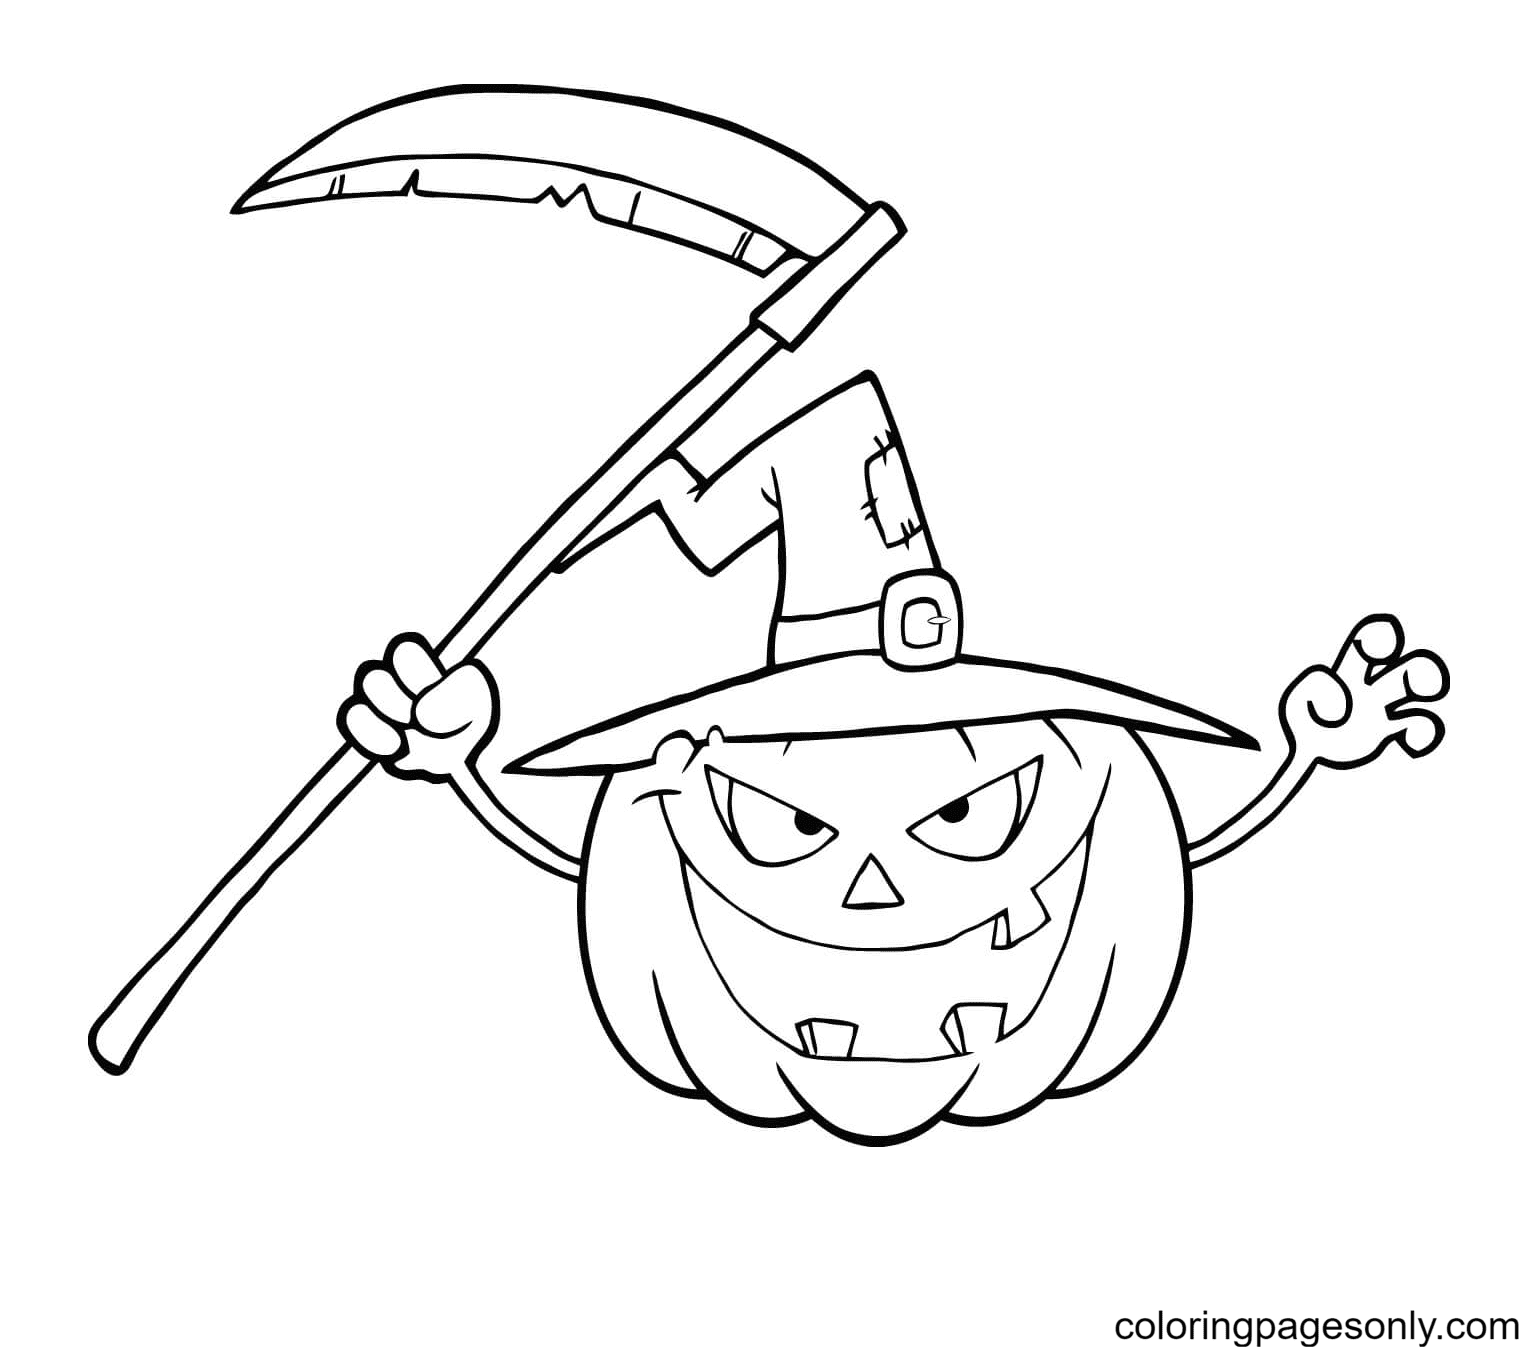 Страшная Хэллоуинская тыква в шляпе ведьмы и косе из «Страшного Хэллоуина»